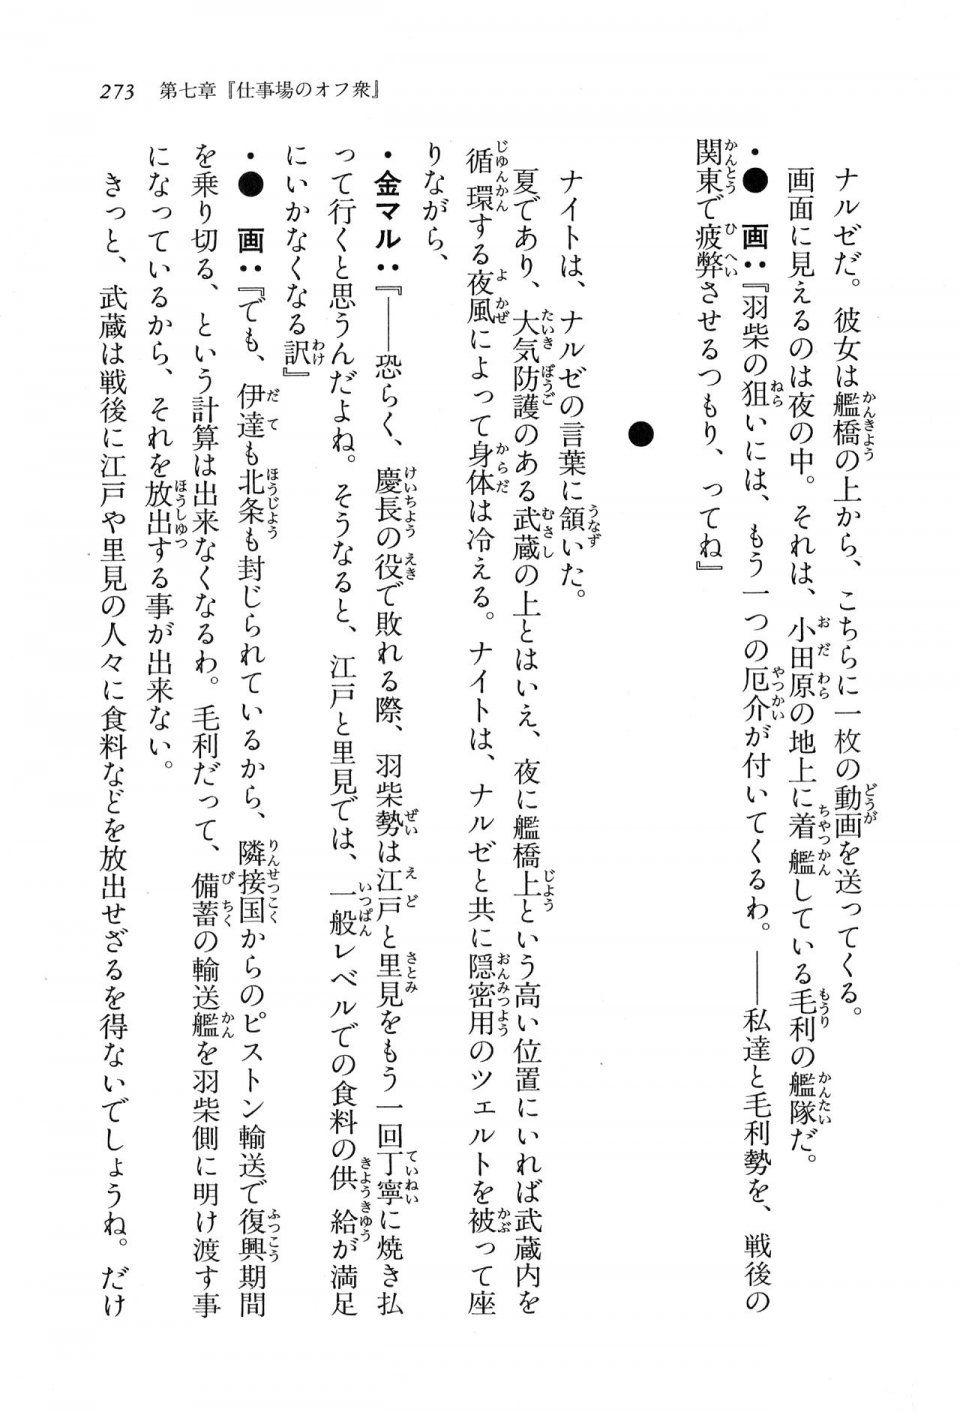 Kyoukai Senjou no Horizon LN Vol 16(7A) - Photo #273